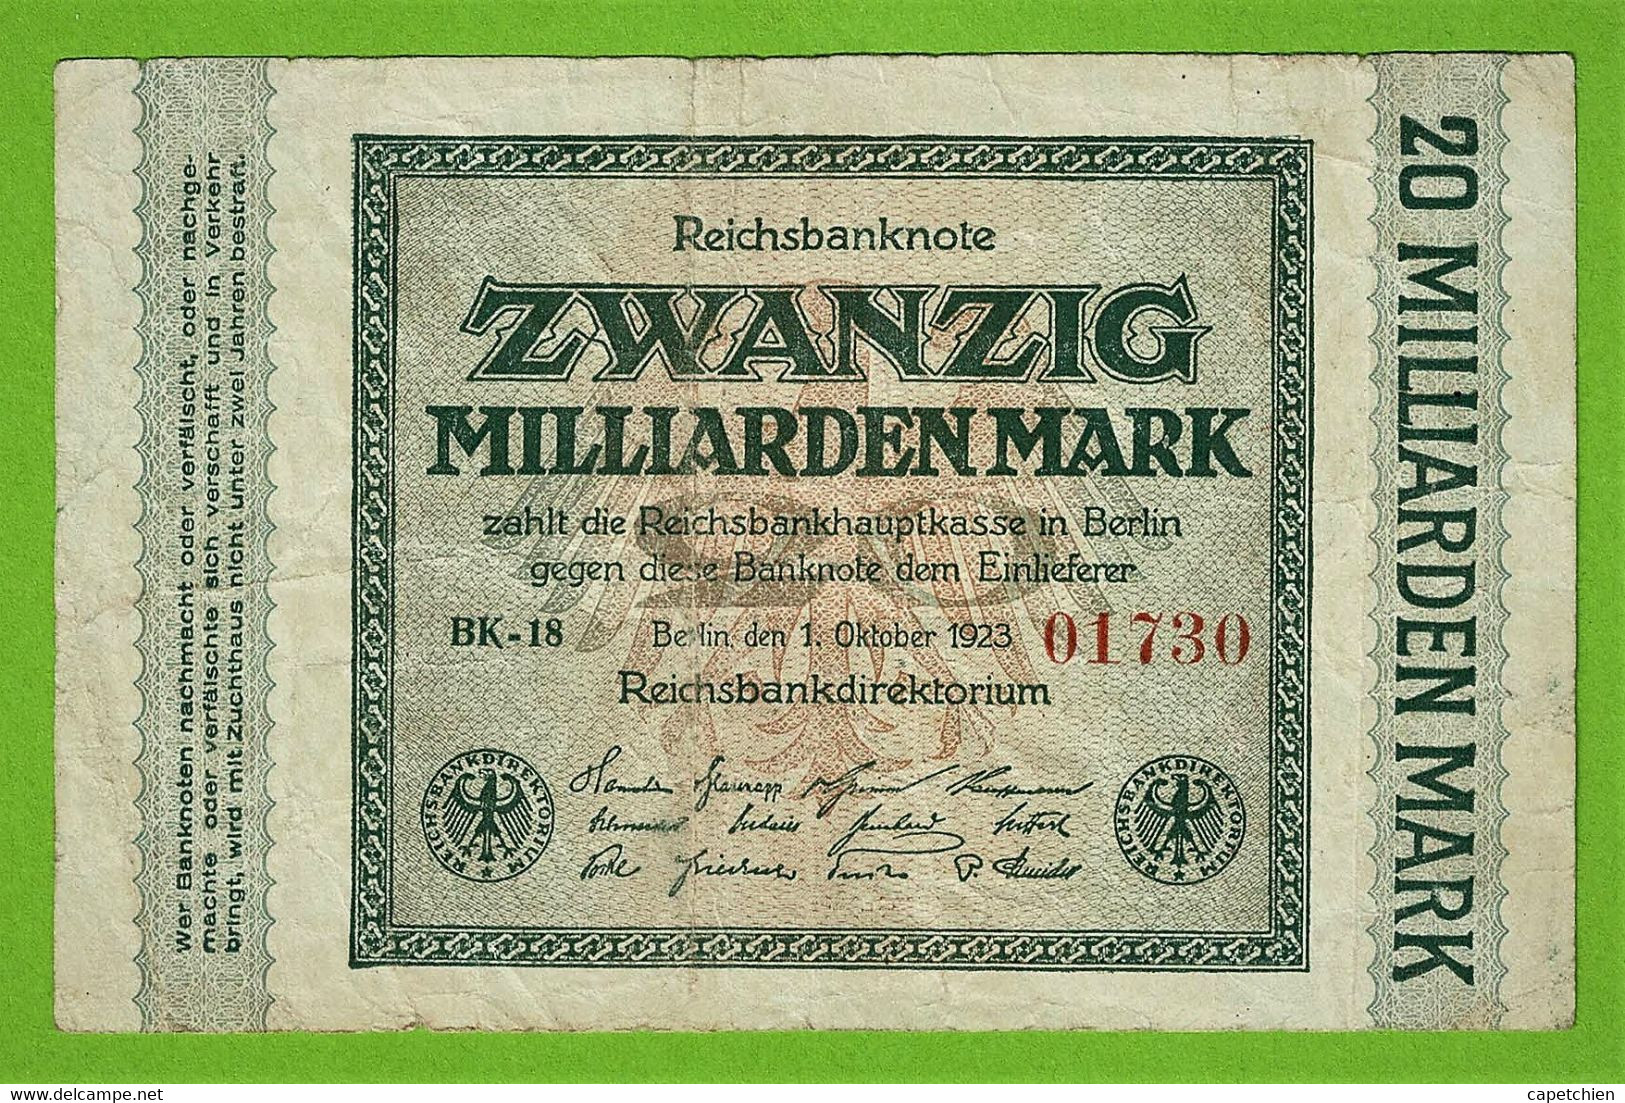 ALLEMAGNE / 20 MILLIARDEN / REICHSBANKNOTE /01 - 10 - 1923 :/ BK 18 /. 01730 /   /  Ros.115 - 20 Mrd. Mark